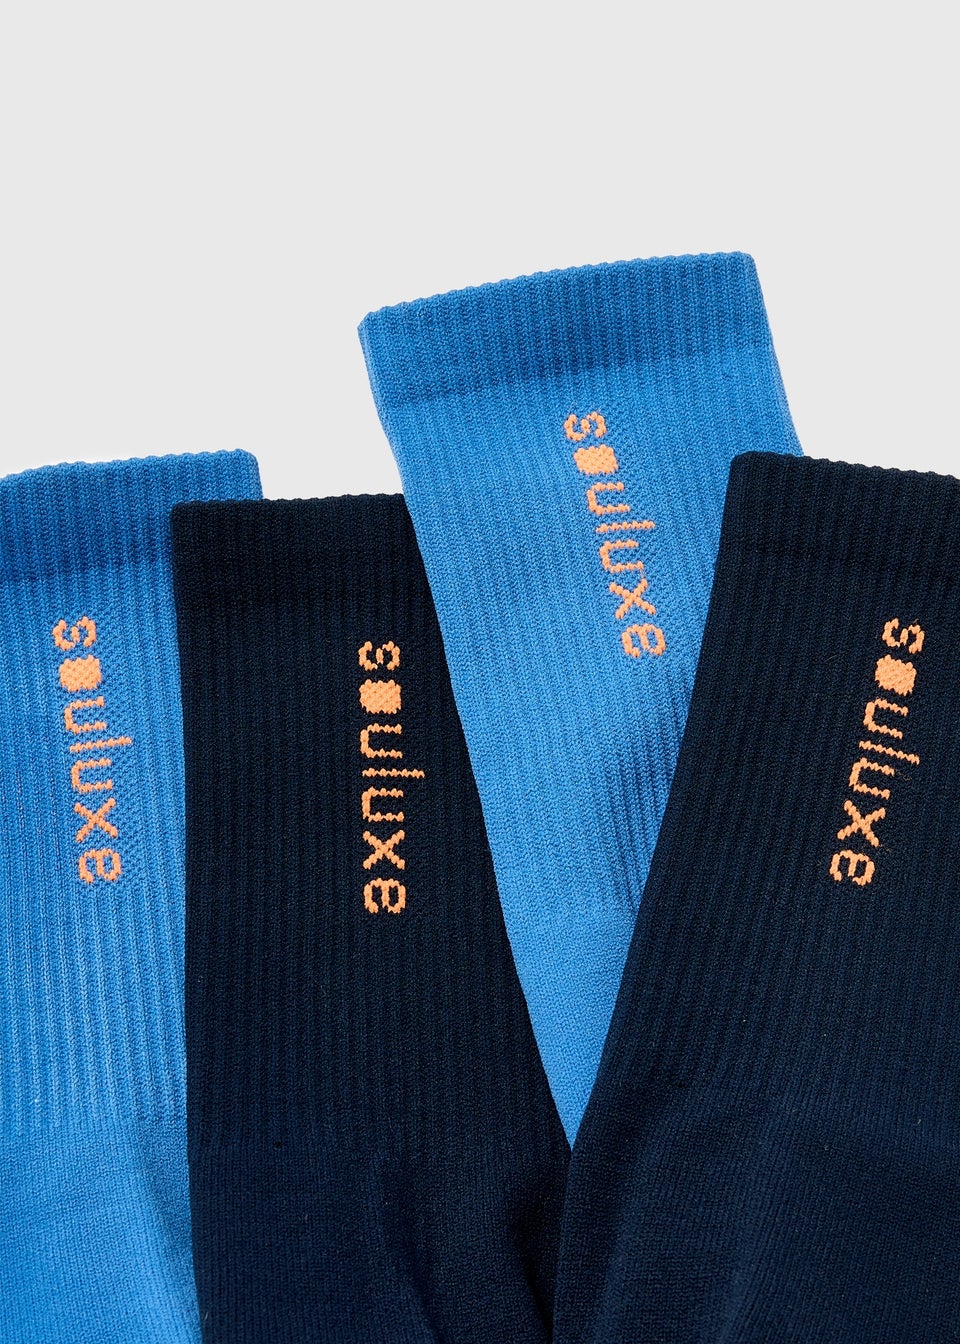 Souluxe Blue Sports Socks